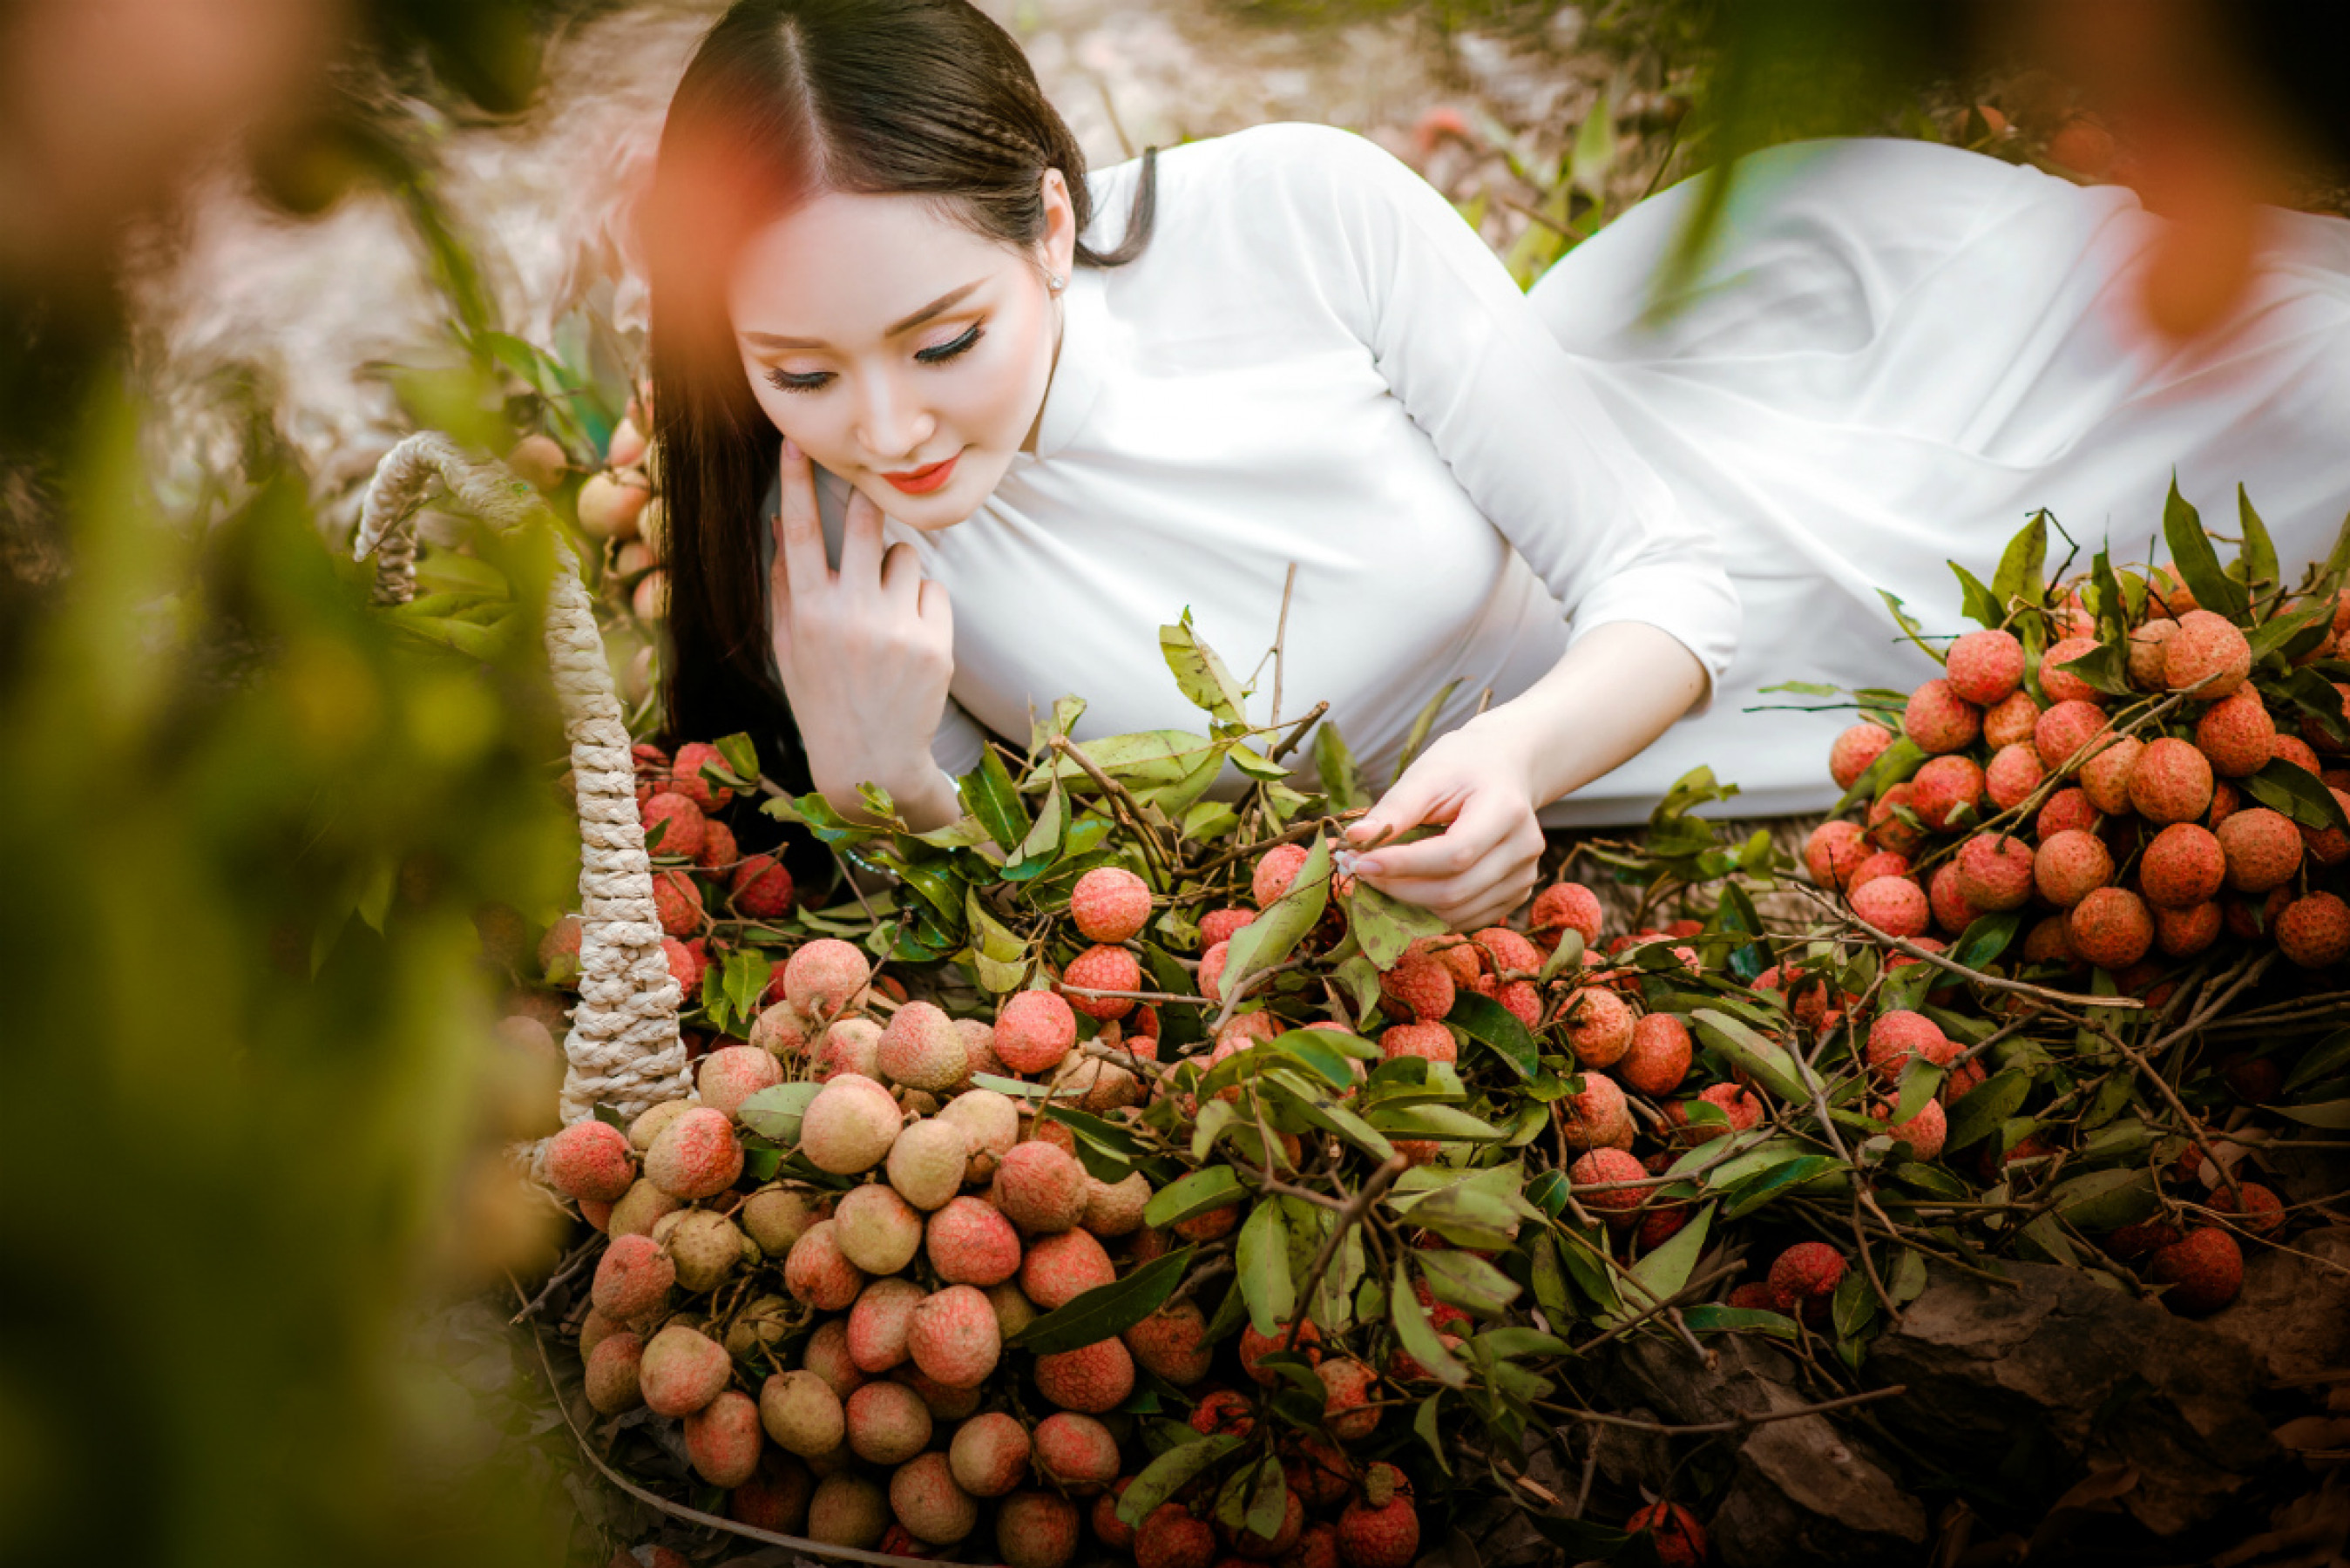 Những chùm vải căng mọng của núi đồi Lục Ngạn rất hài hòa, ăn nhịp với vẻ đẹp thanh xuân tràn đầy sức sống của Nguyễn Oanh. 